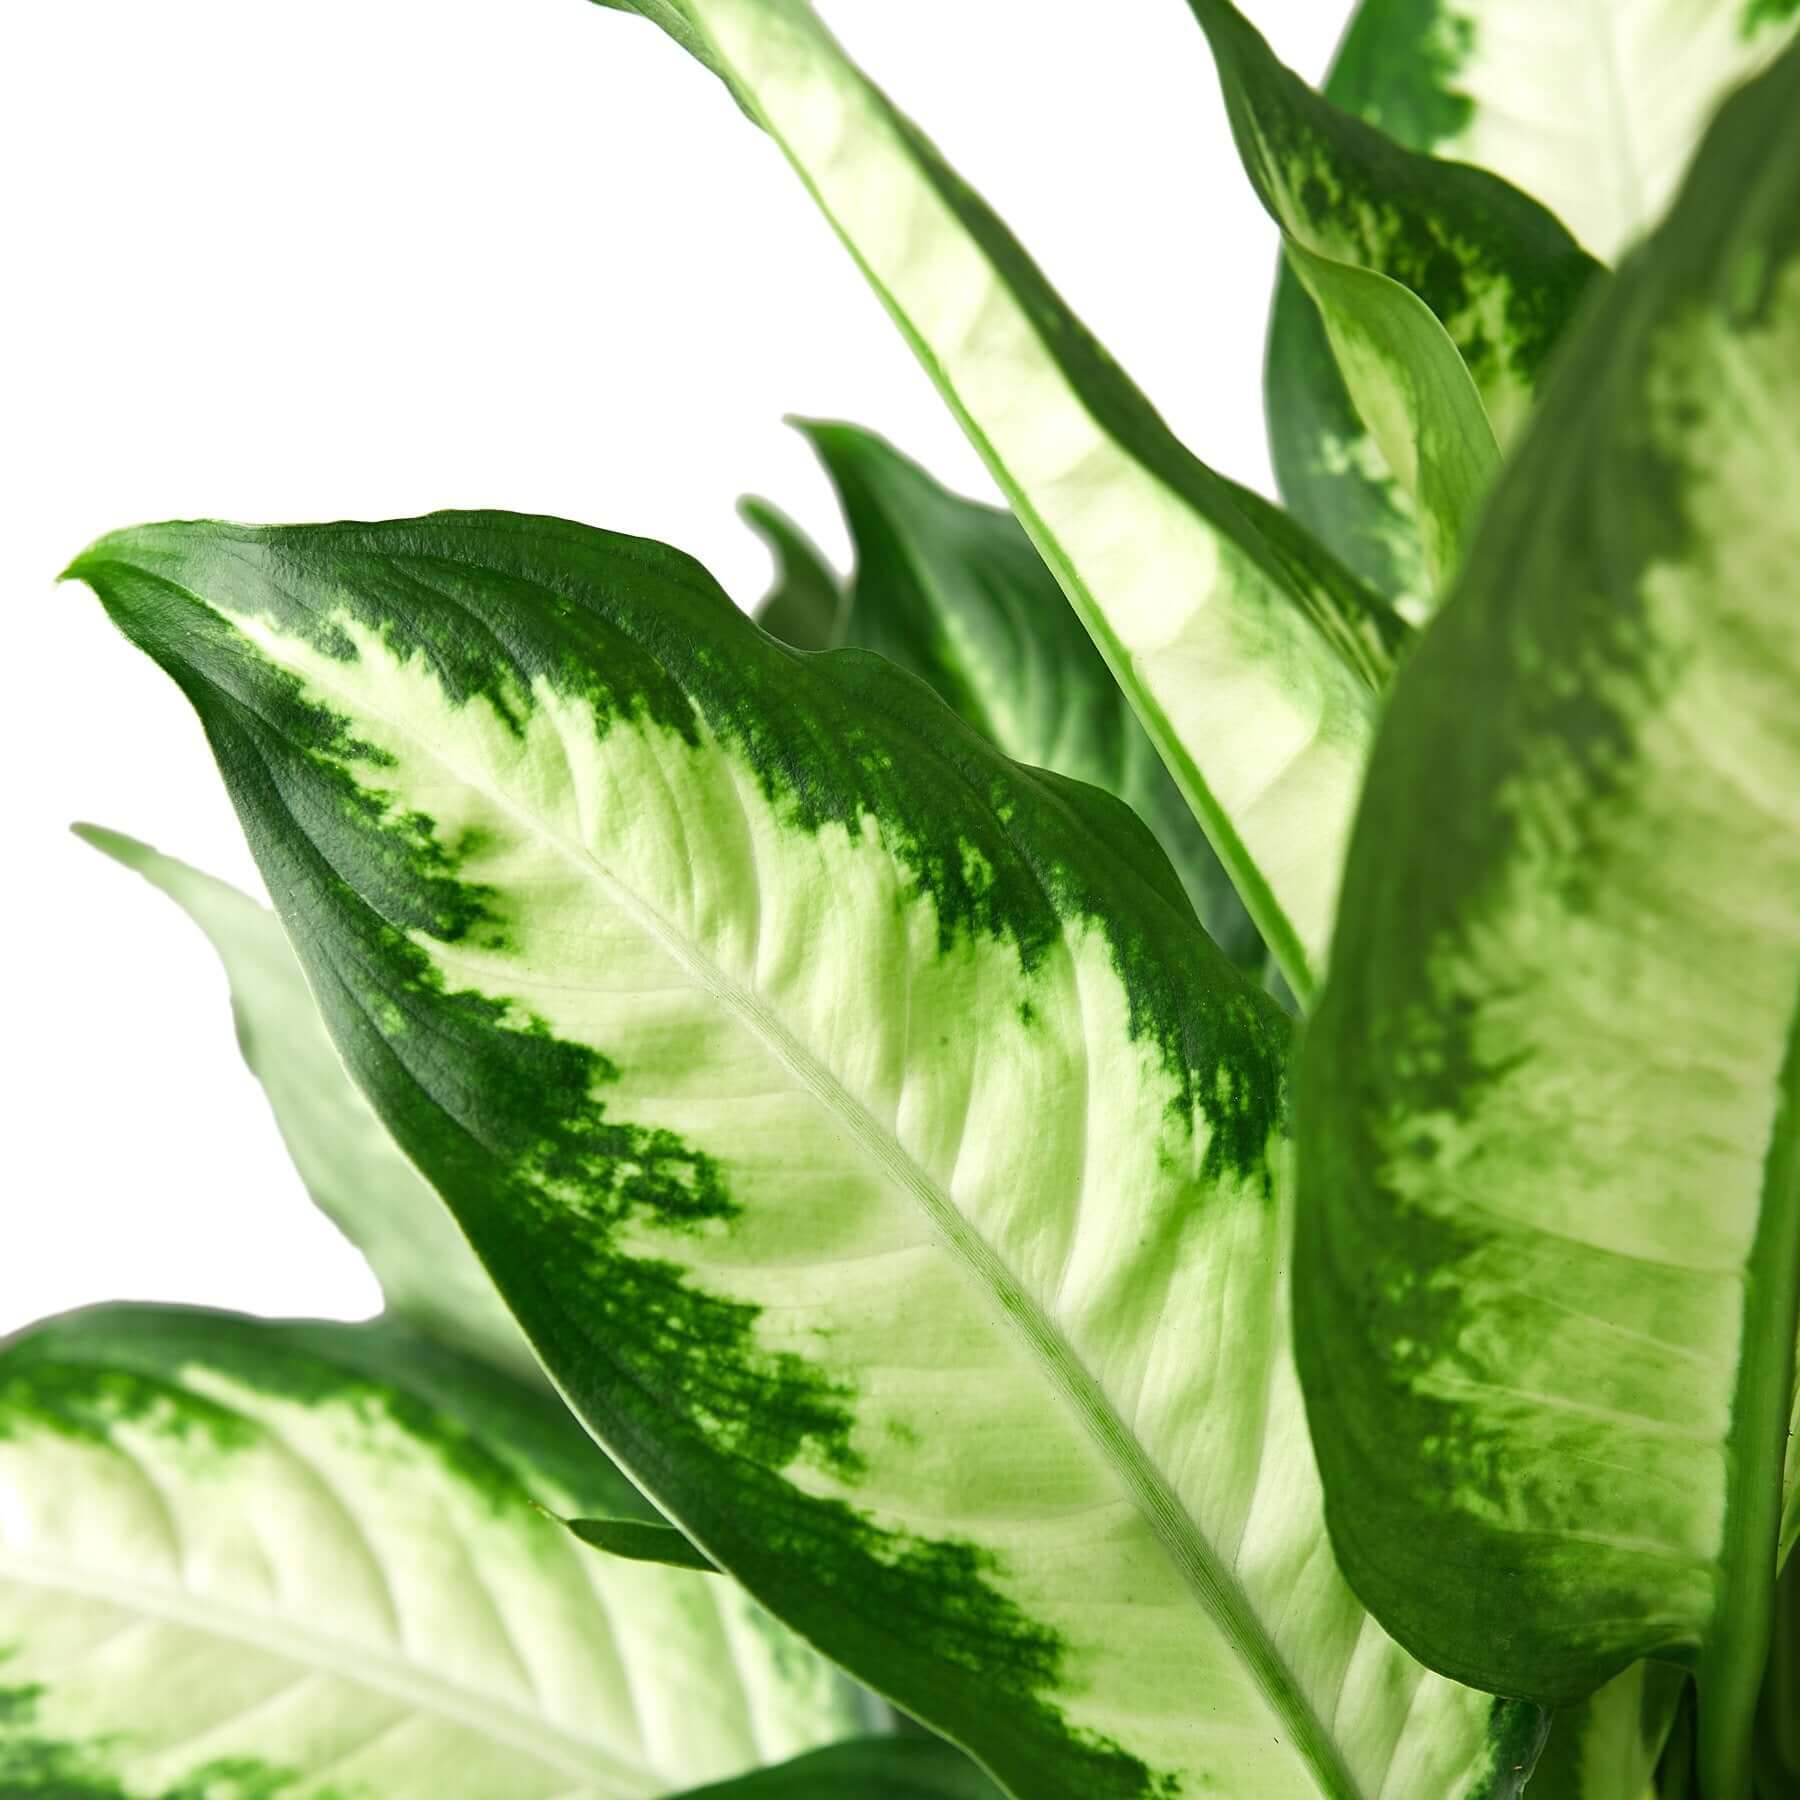 Dieffenbachia Camille - Dumb Cane | Modern house plants that clean the air